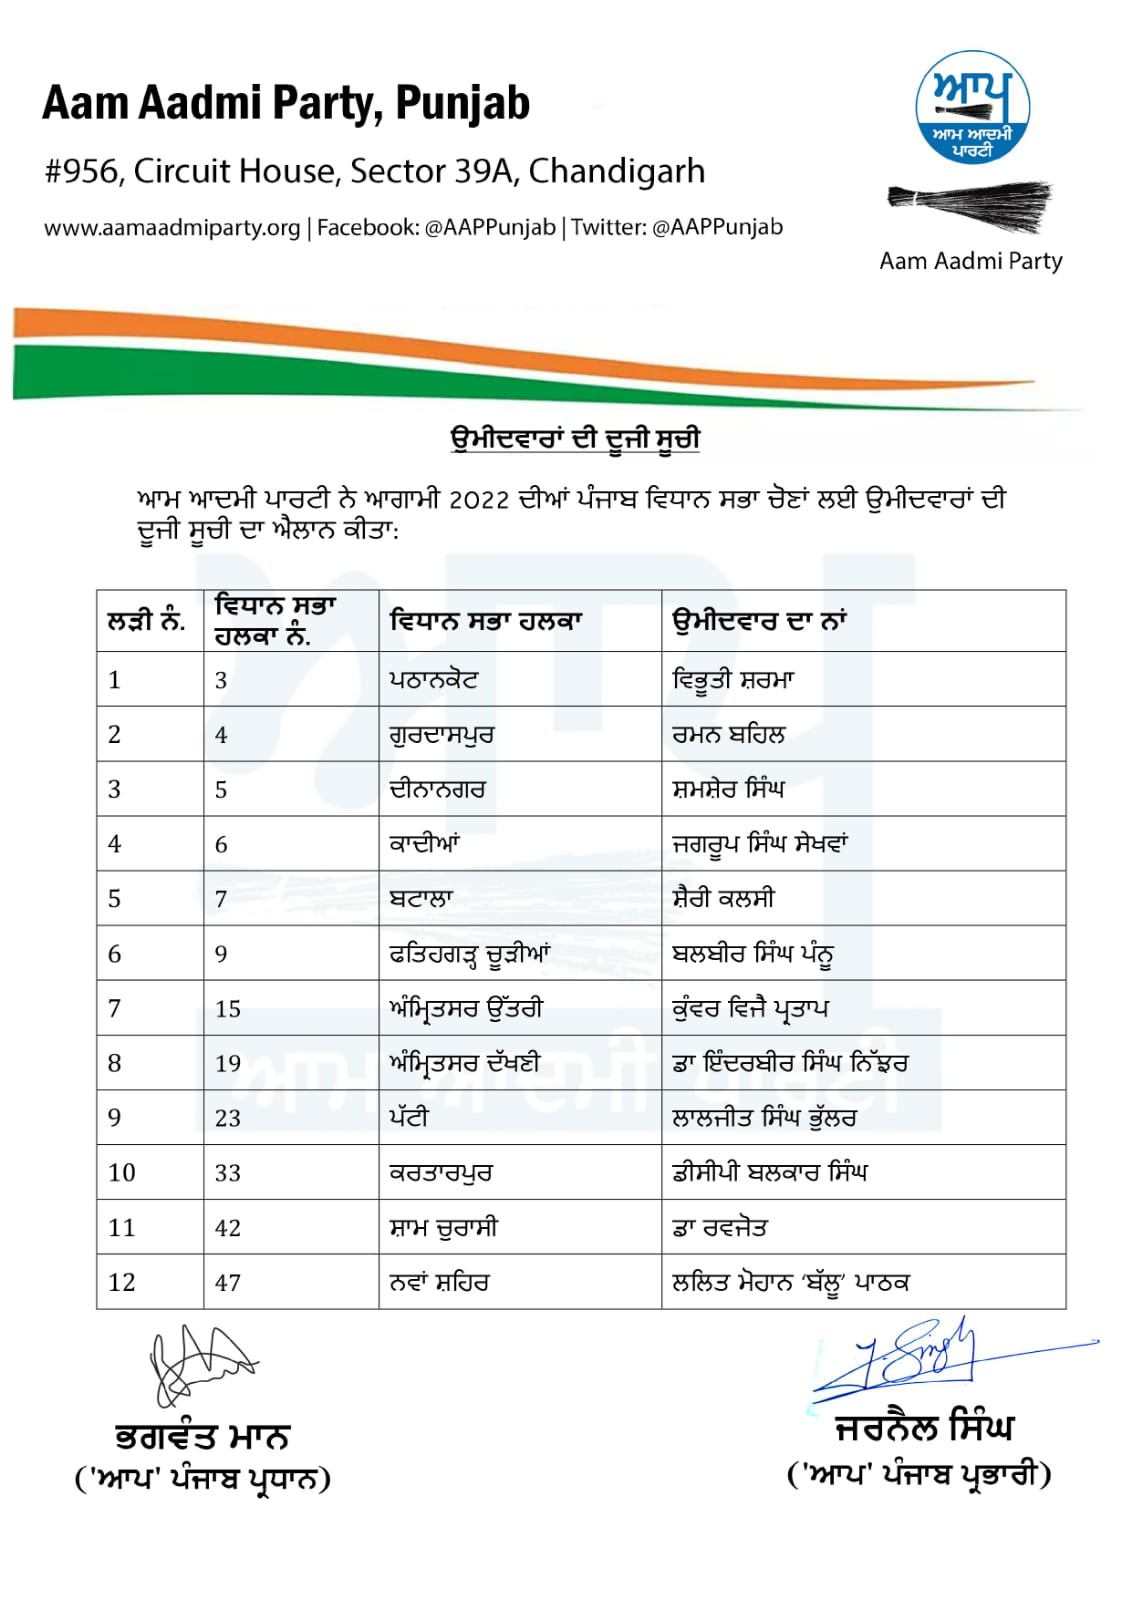 Punjab AAP Candidates: ਆਮ ਆਦਮੀ ਪਾਰਟੀ ਨੇ ਵਿਧਾਨ ਸਭਾ ਚੋਣਾਂ ਲਈ ਐਲਾਨੇ ਉਮੀਦਵਾਰ